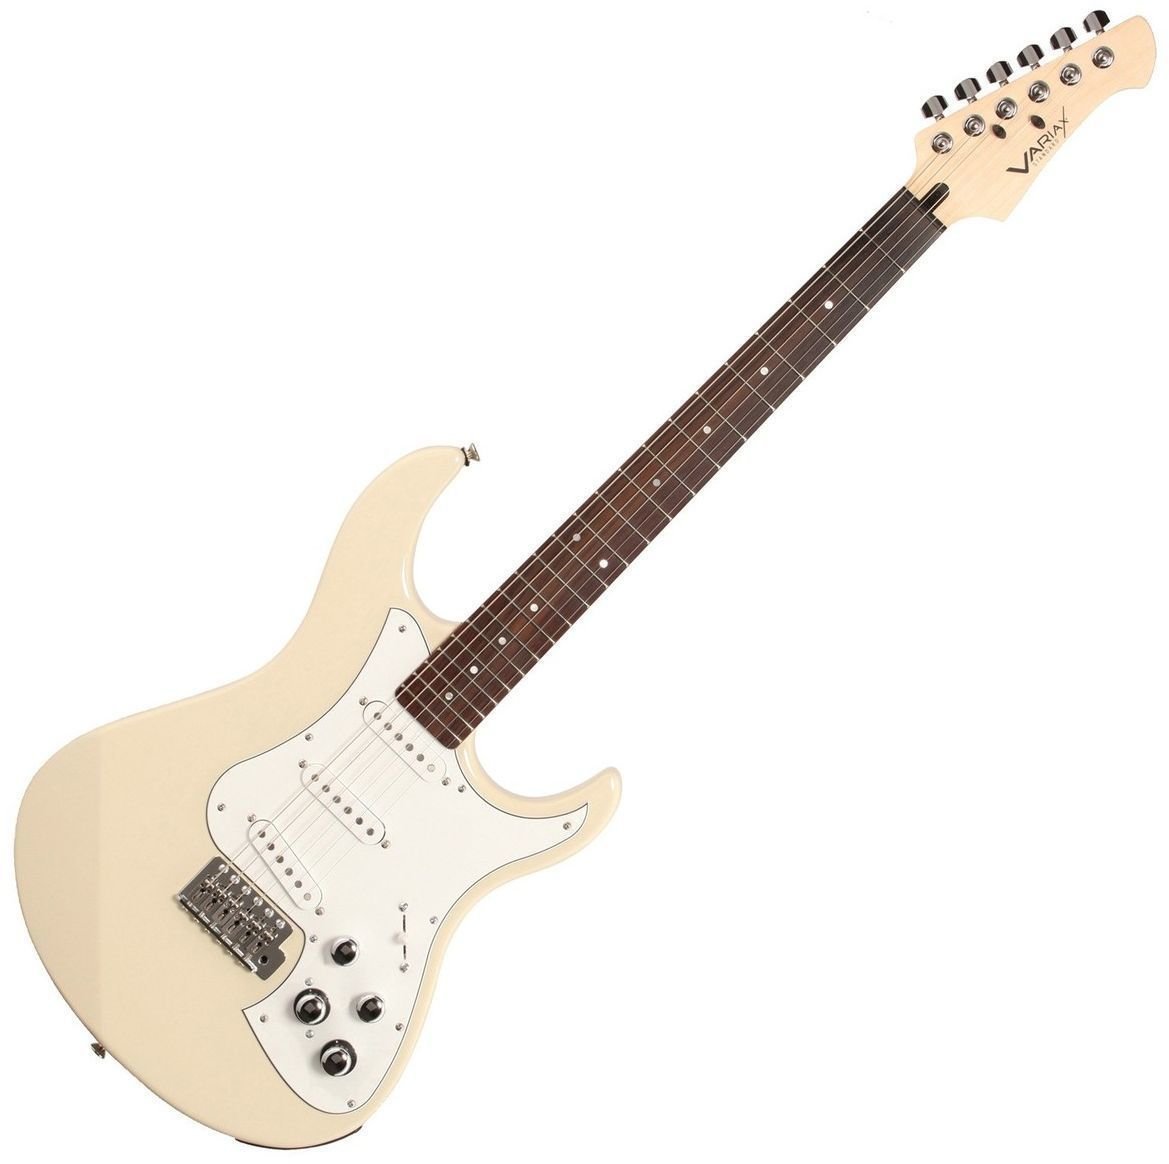 Električna gitara Line6 Variax Standard White